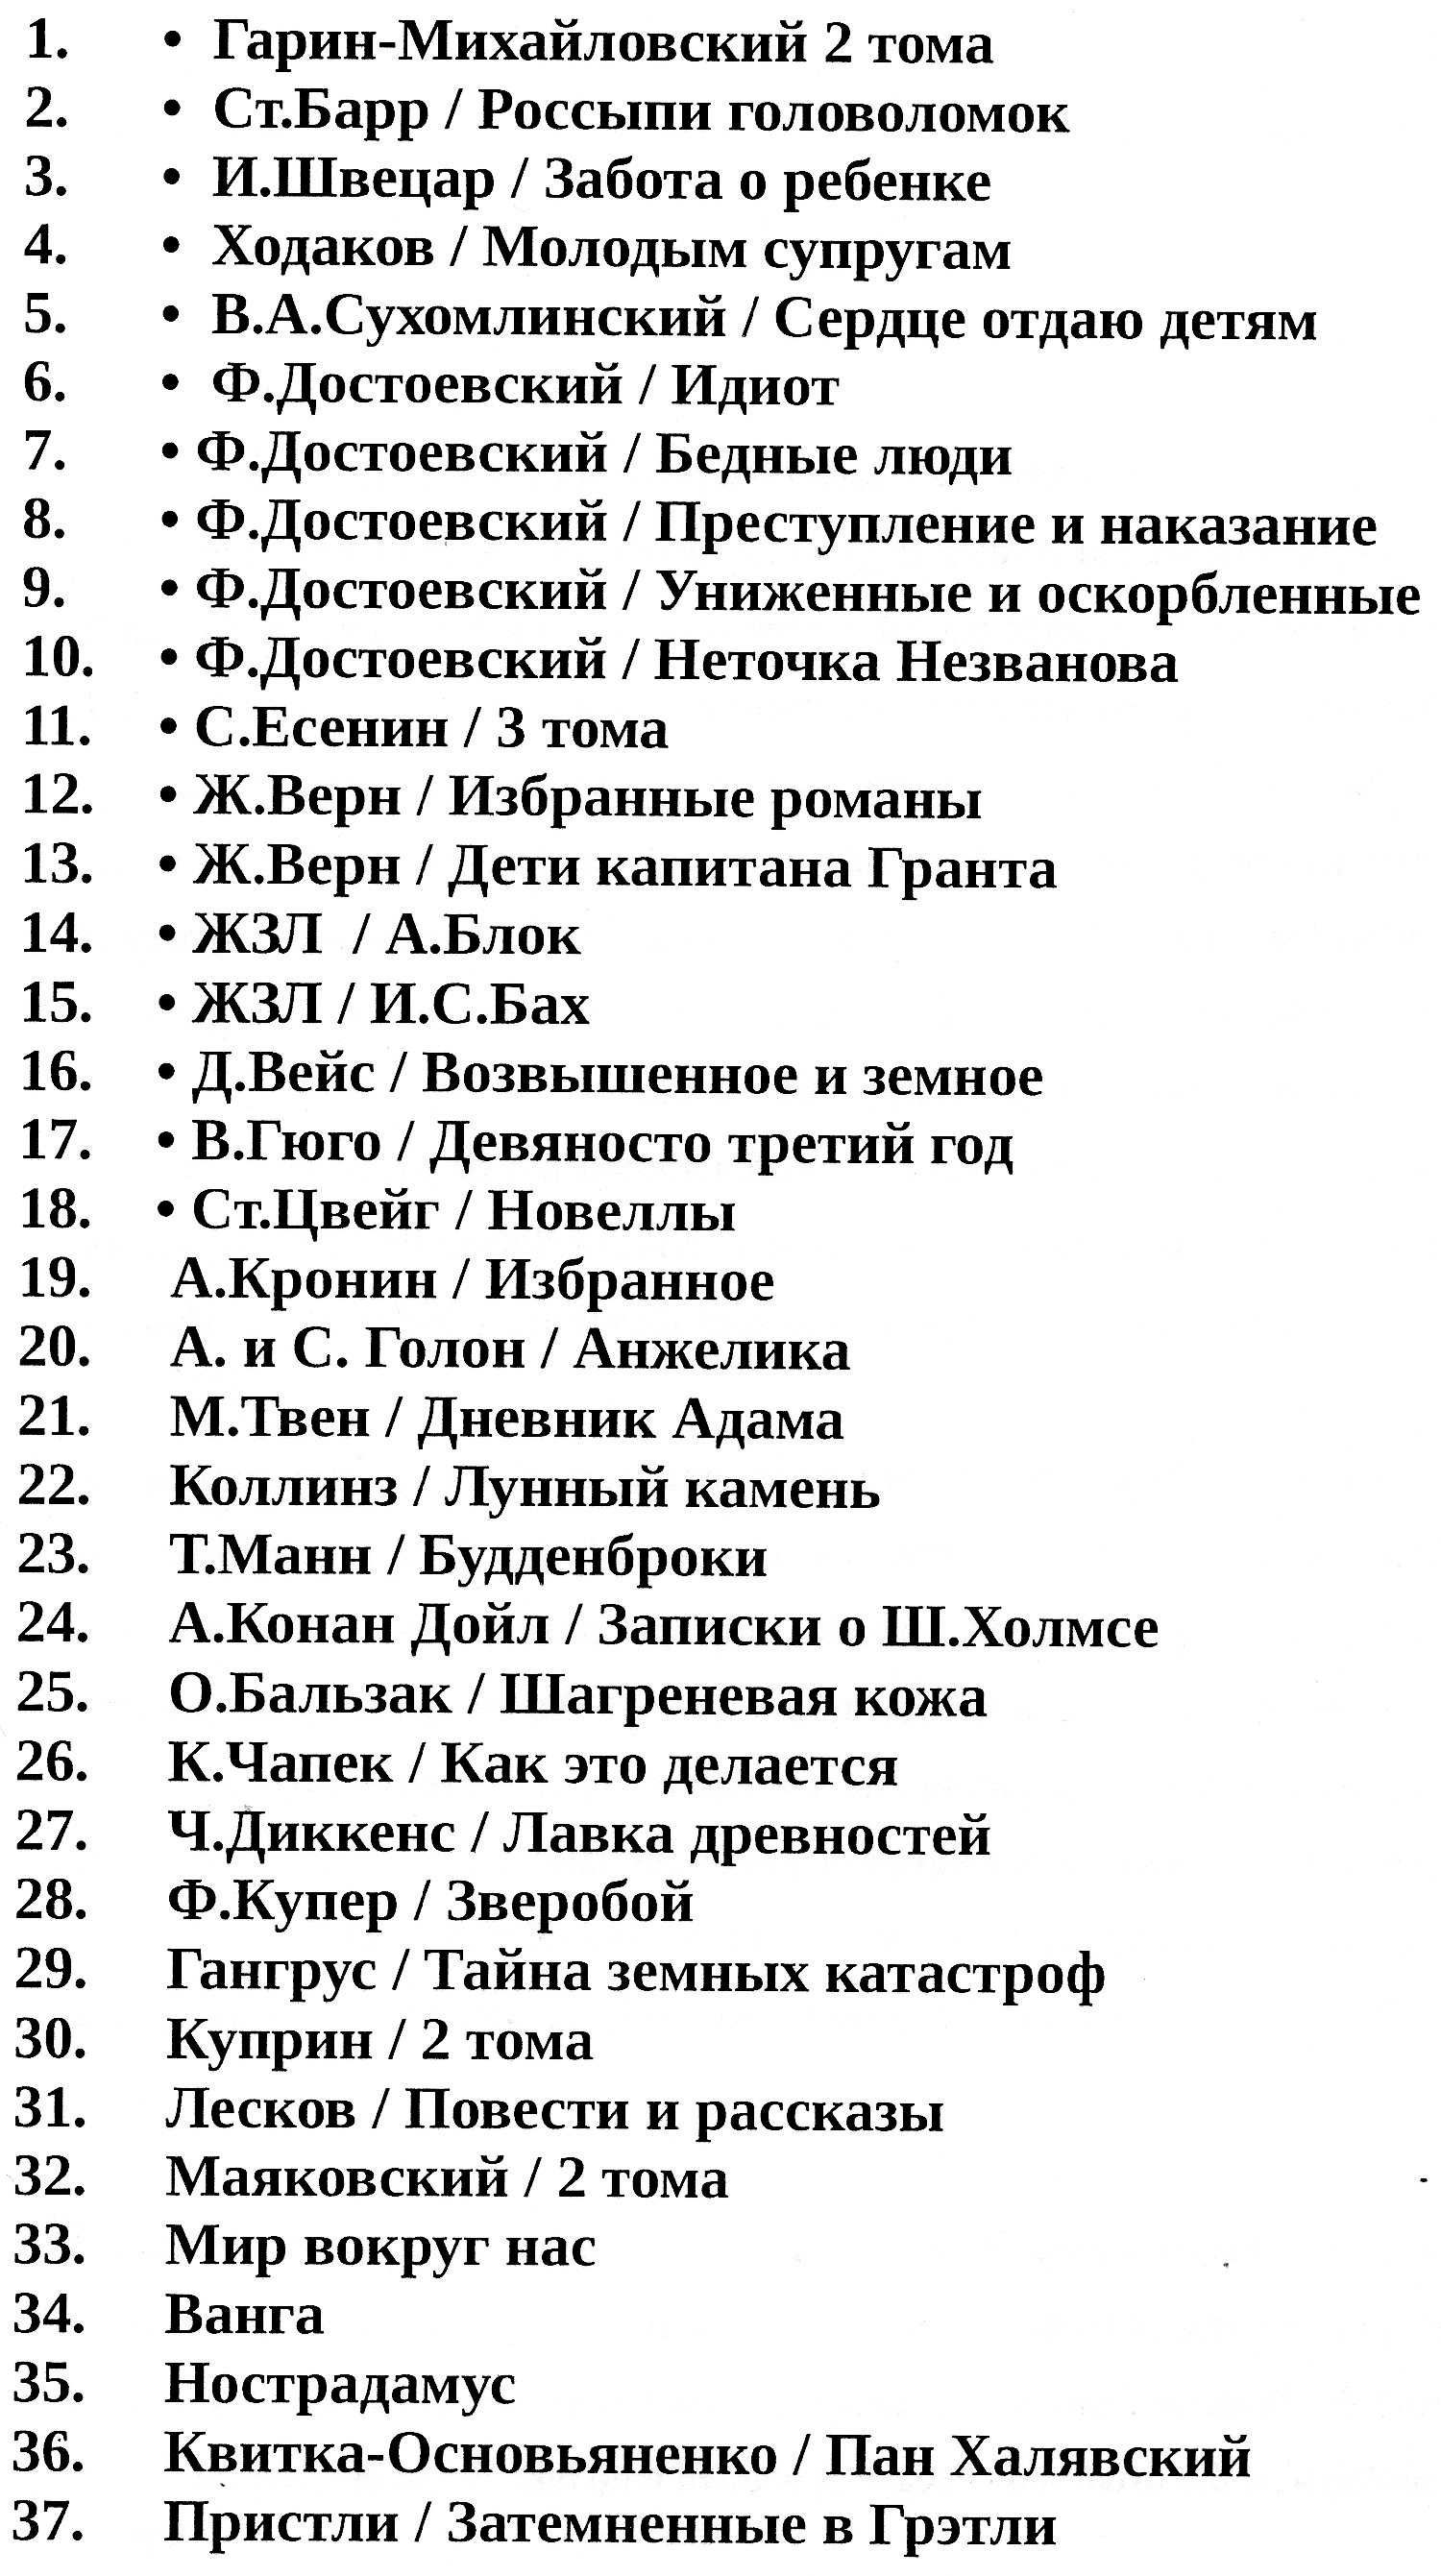 М.Лермонтов, собрание сочинений в 4-х томах, 1975 г.